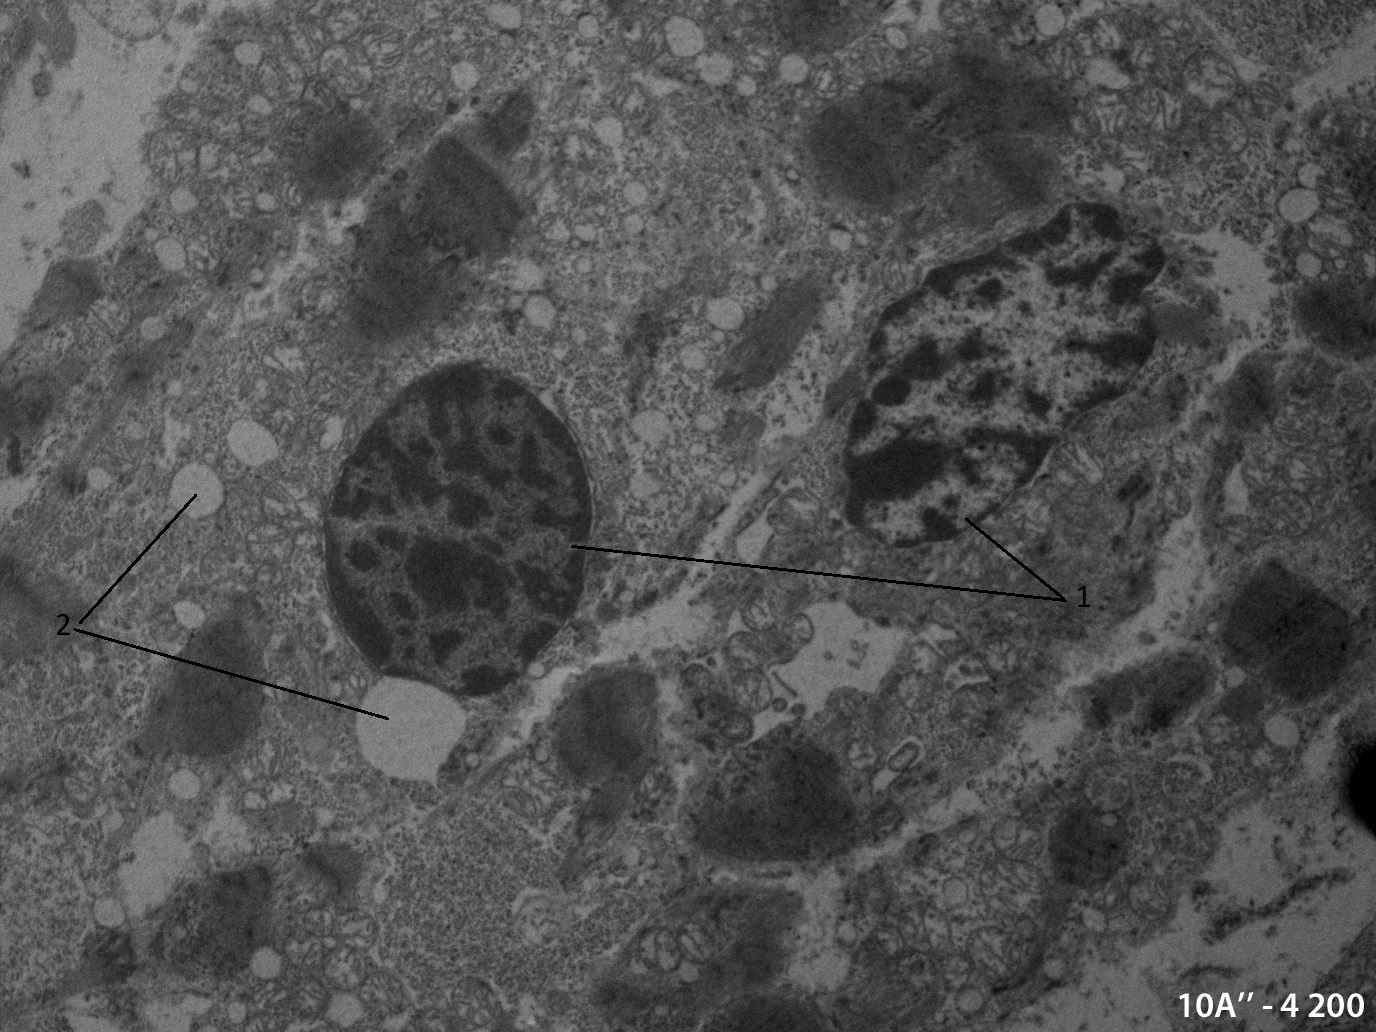 Электронномикороскопическое фото малодифференцированных кардиомиоцитов развивающегося миокарда куриного эмбриона через 24 часов после термотравмы на различных стадиях апоптотической гибели:1 - уплотнения хроматина в ядрах кардиомиоцитов; 2 - апоптотические тельца